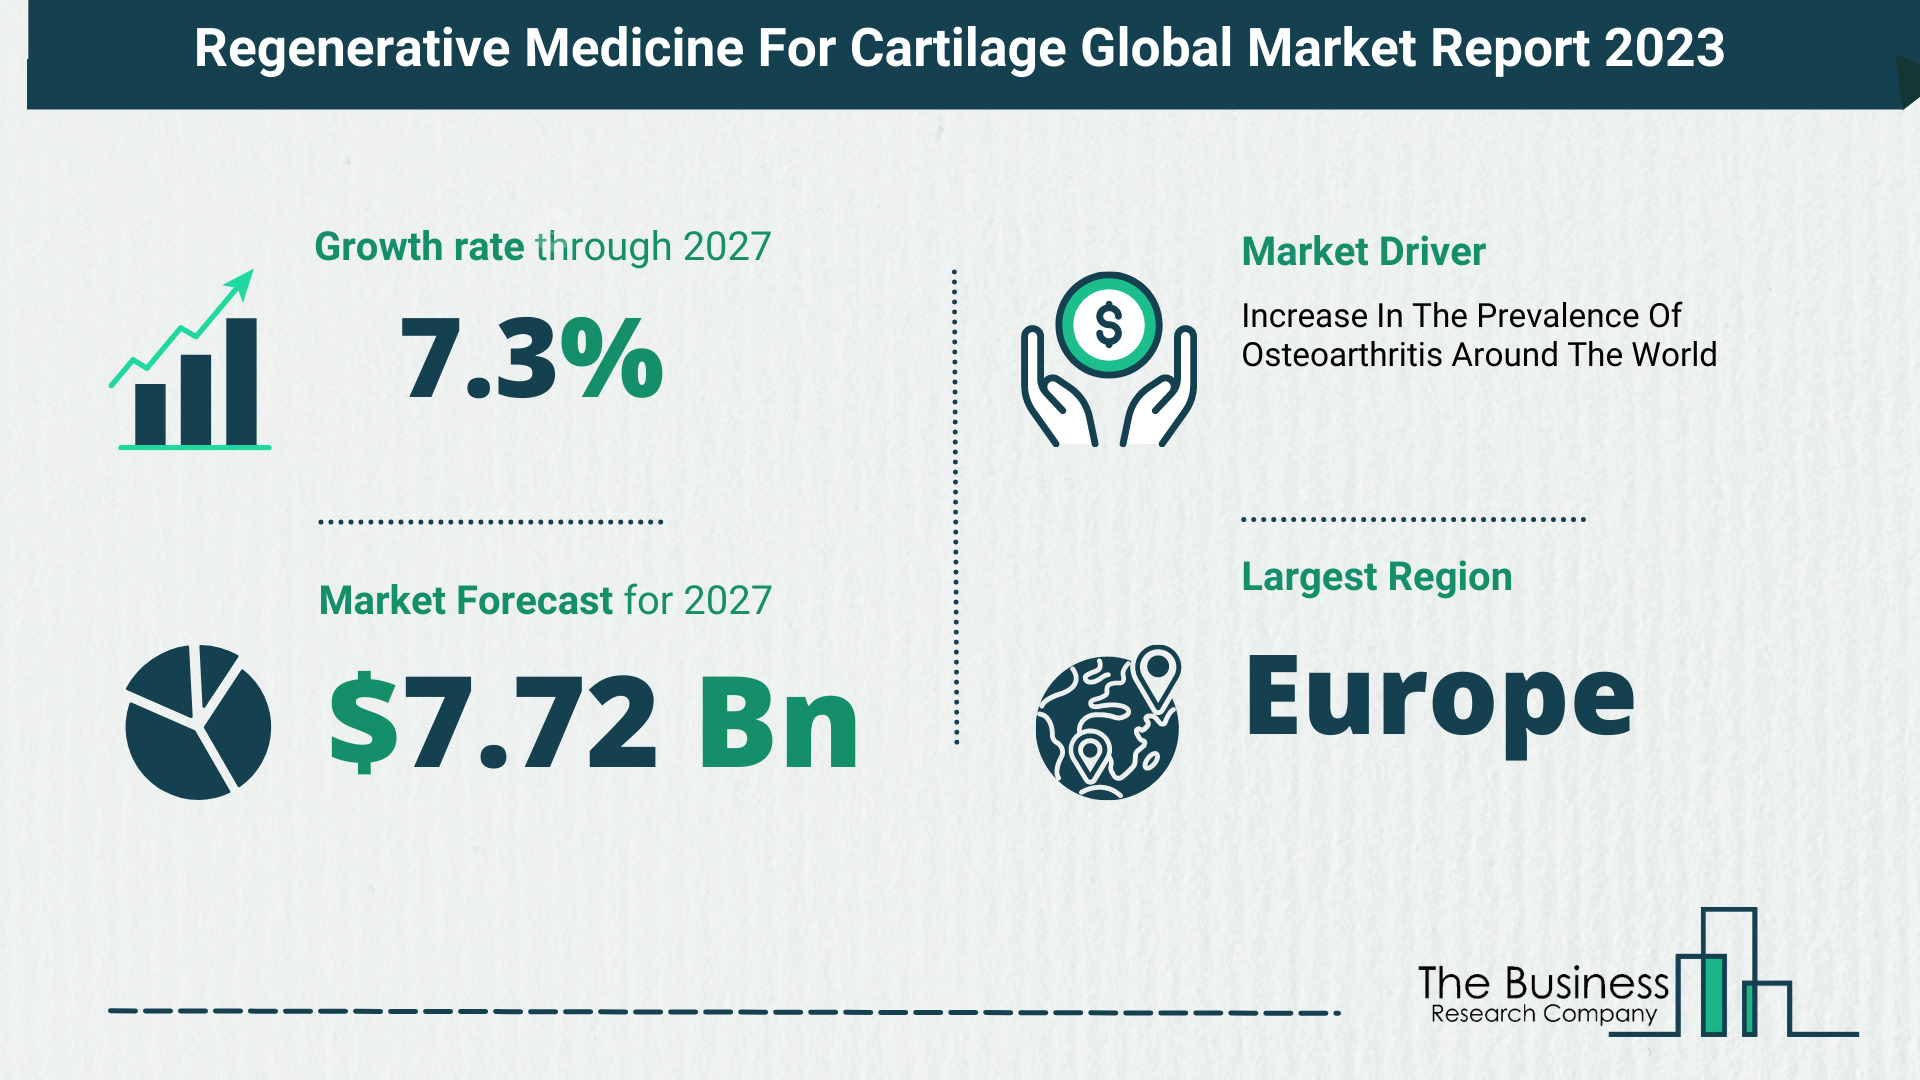 Global Regenerative Medicine For Cartilage Market